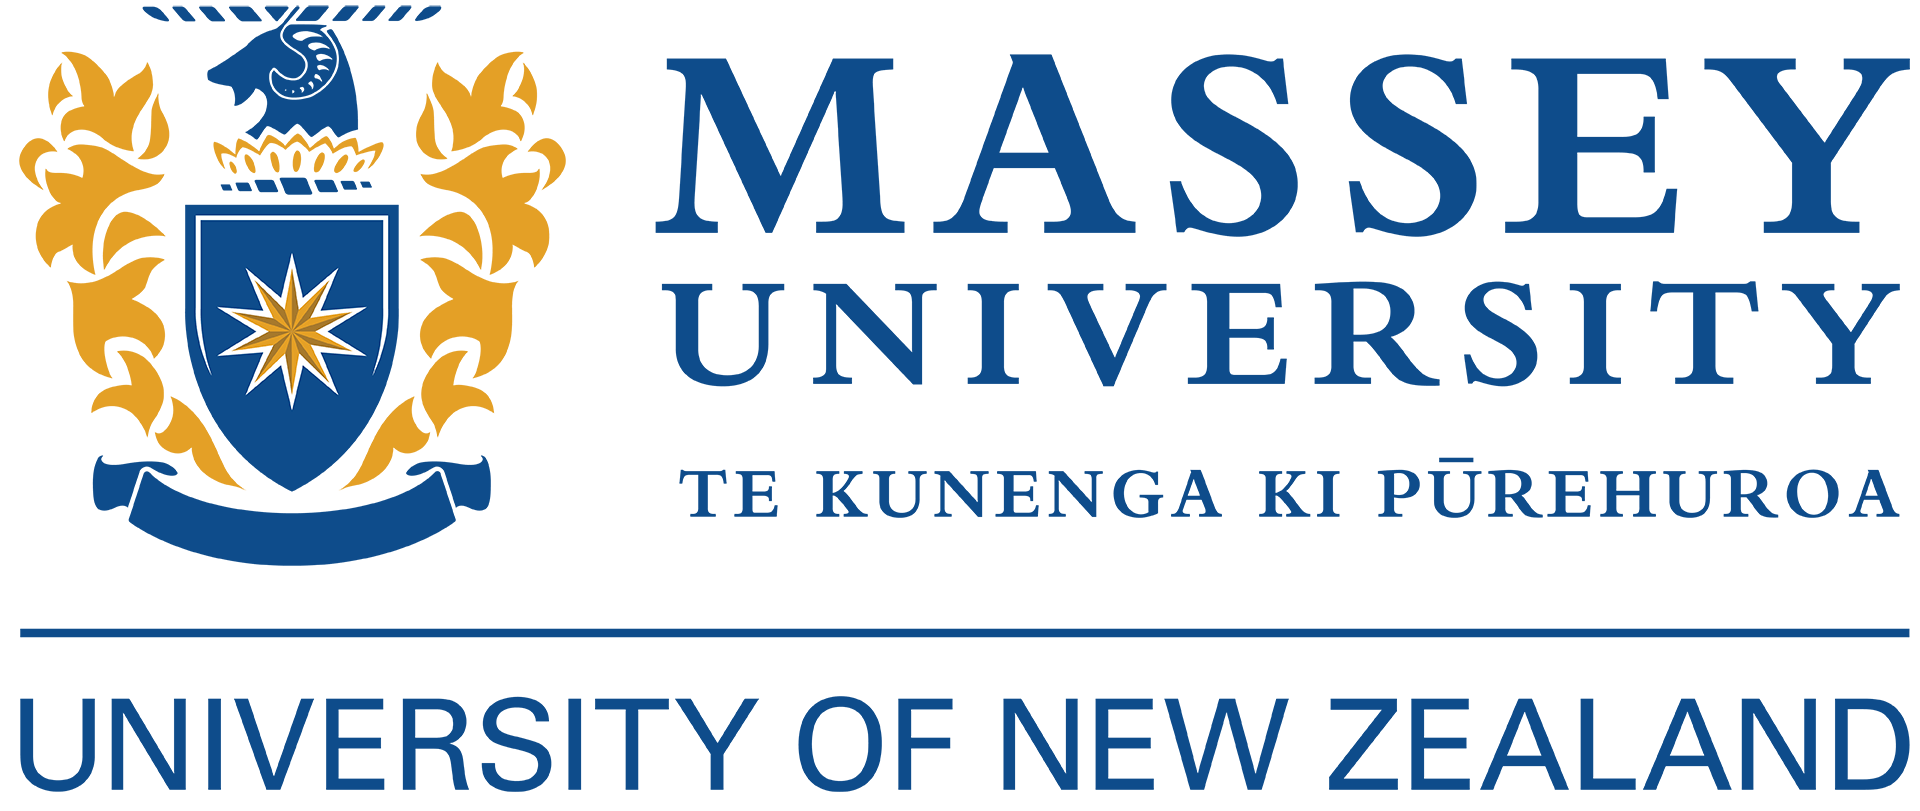 Massey Logo - Massey University- Wellington, logo - Knowledge Plus Education ...